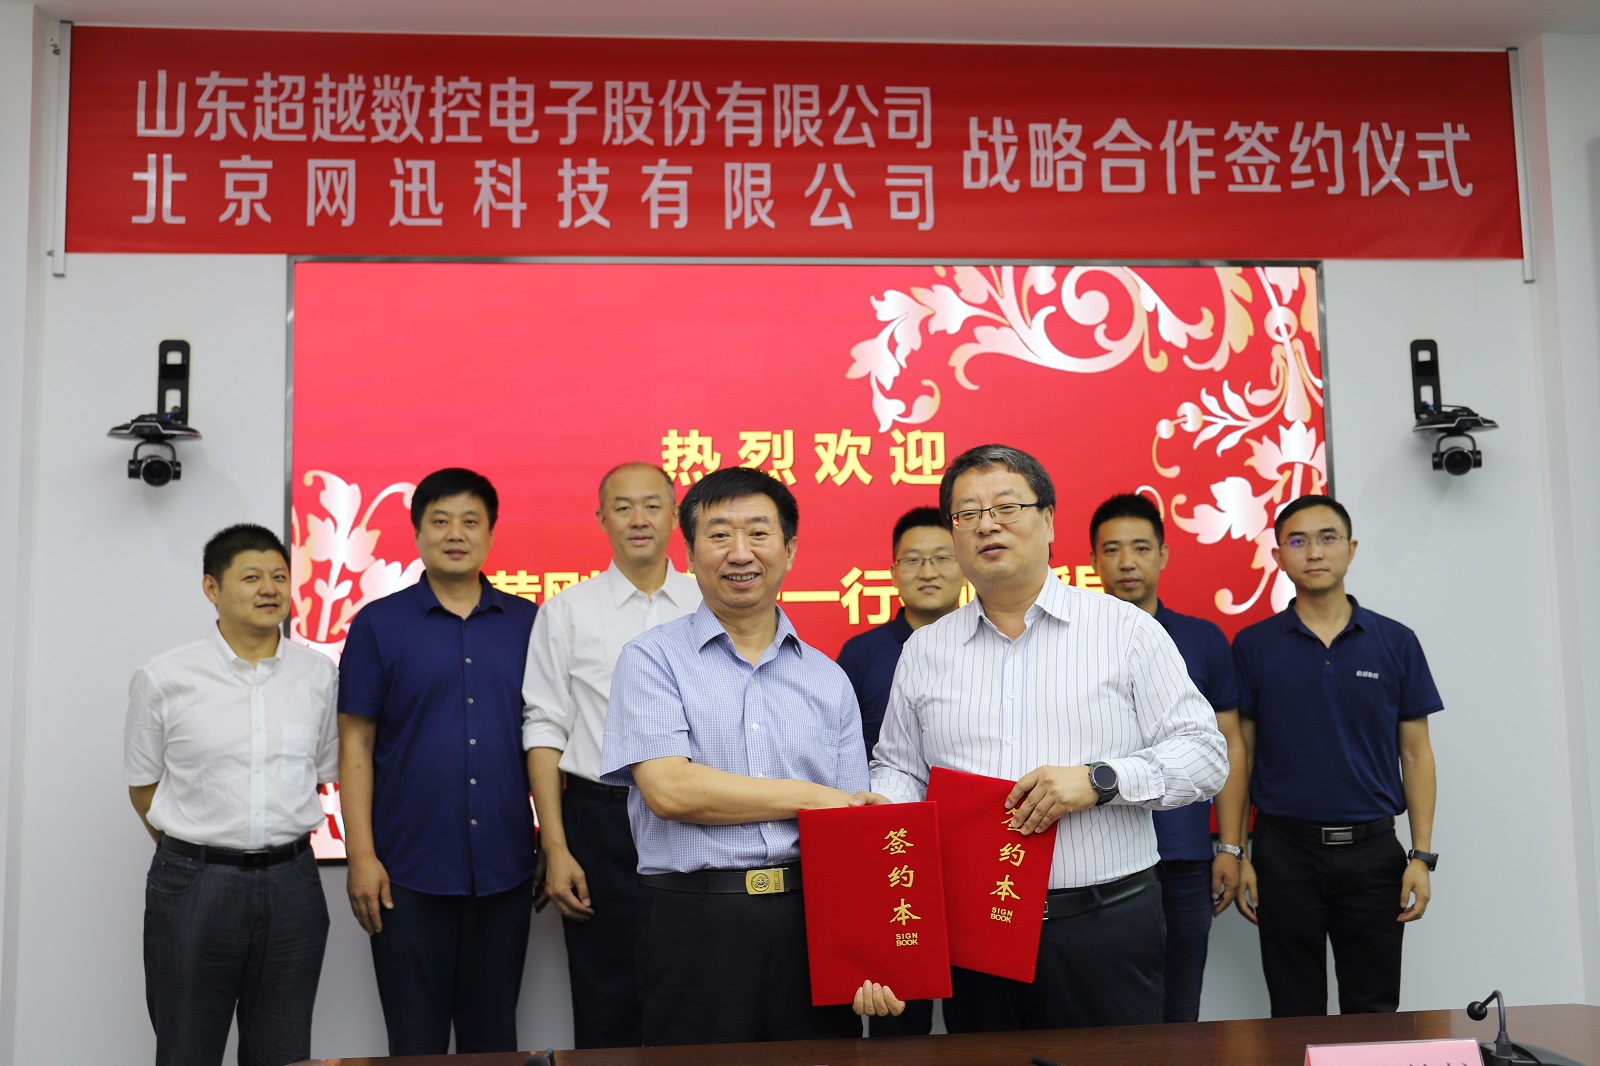 北京网迅科技有限公司与山东超越数控电子股份有限公司签署战略合作协议